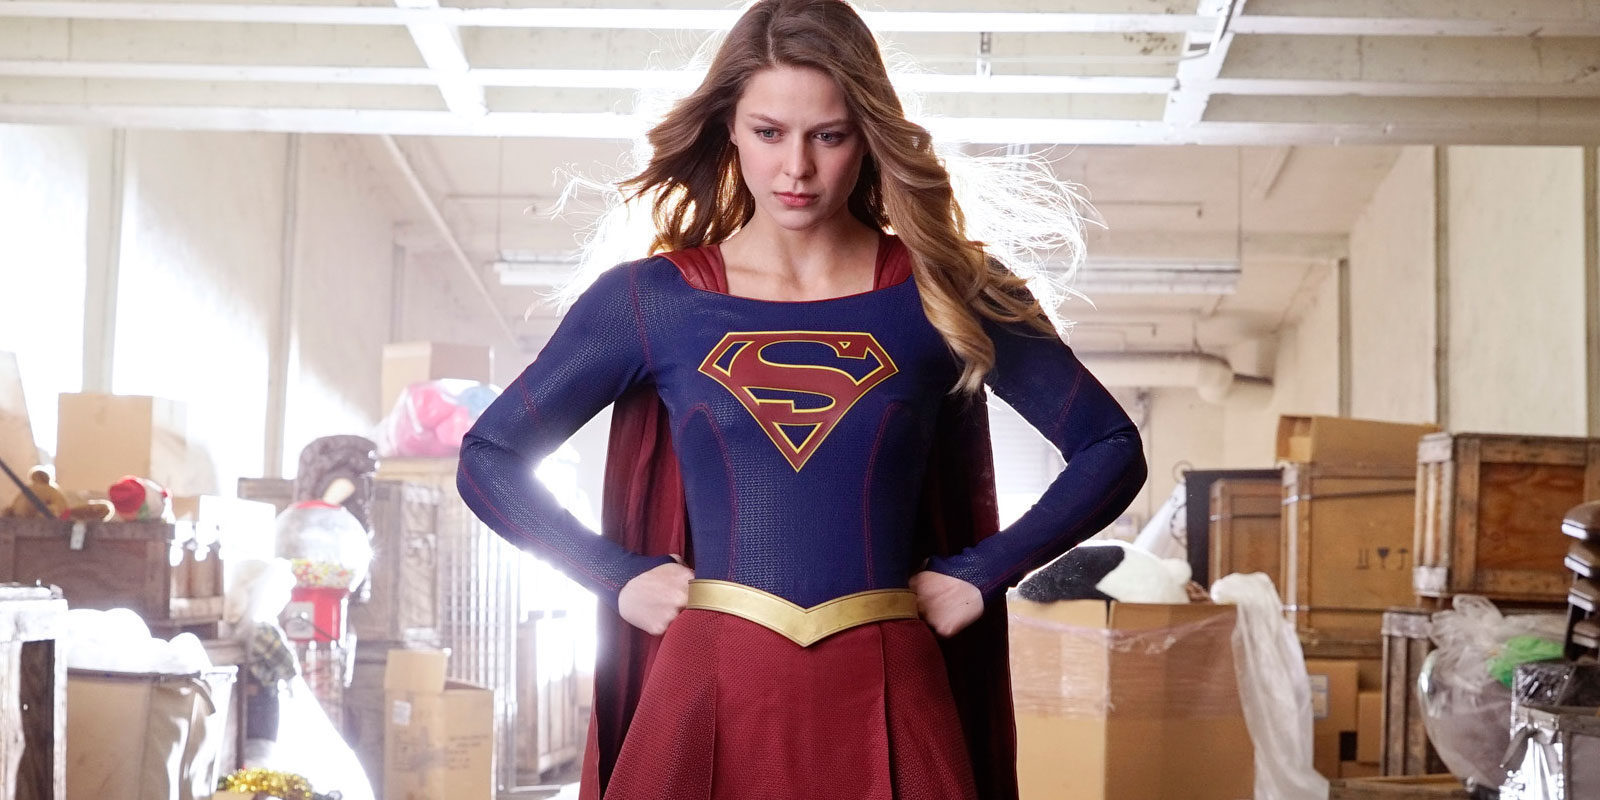 Ya tenemos la primera imagen promocional de Supergirl con Superman